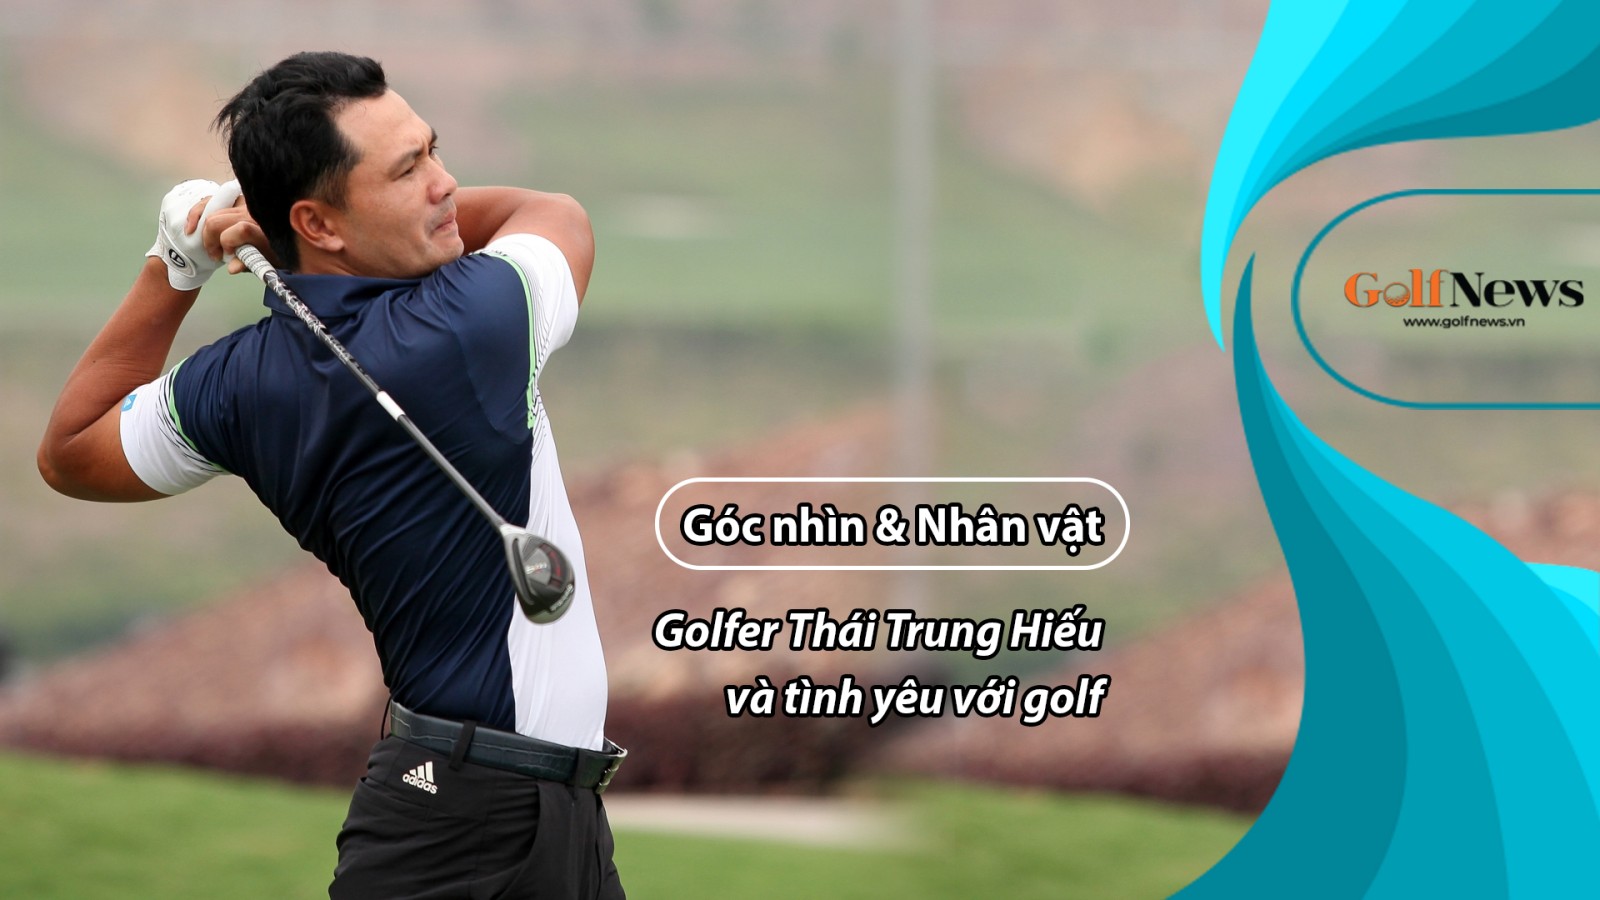 Góc nhìn & Nhân vật: Golfer Thái Trung Hiếu và tình yêu với golf